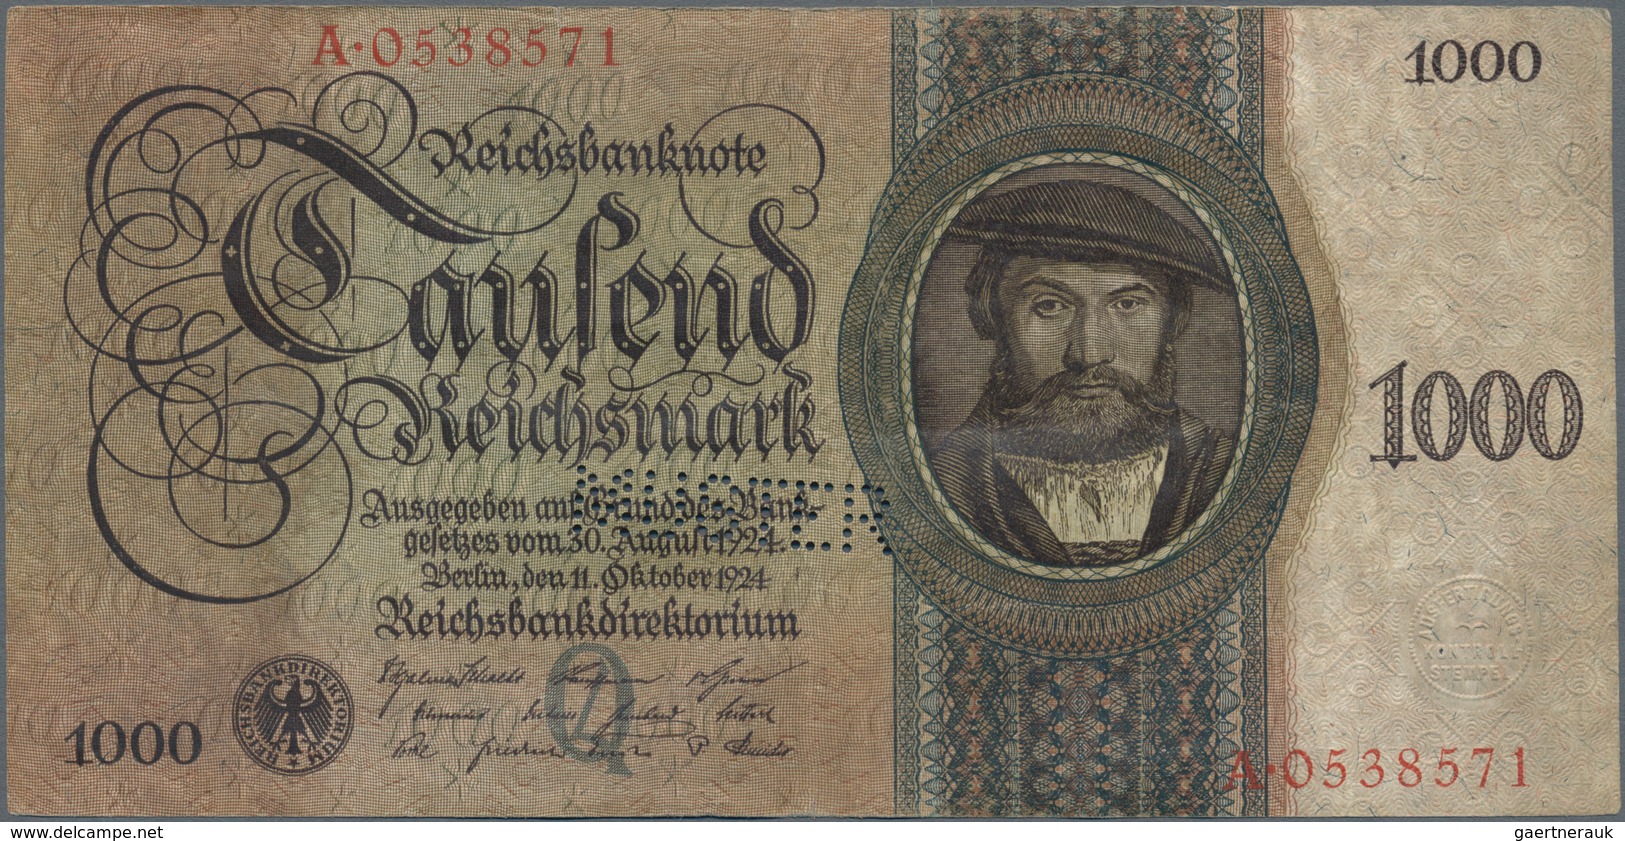 Deutschland - Deutsches Reich bis 1945: Lot mit 4 x 1000 Reichsmark Holbein Serie 1924, mit UDr./Ser